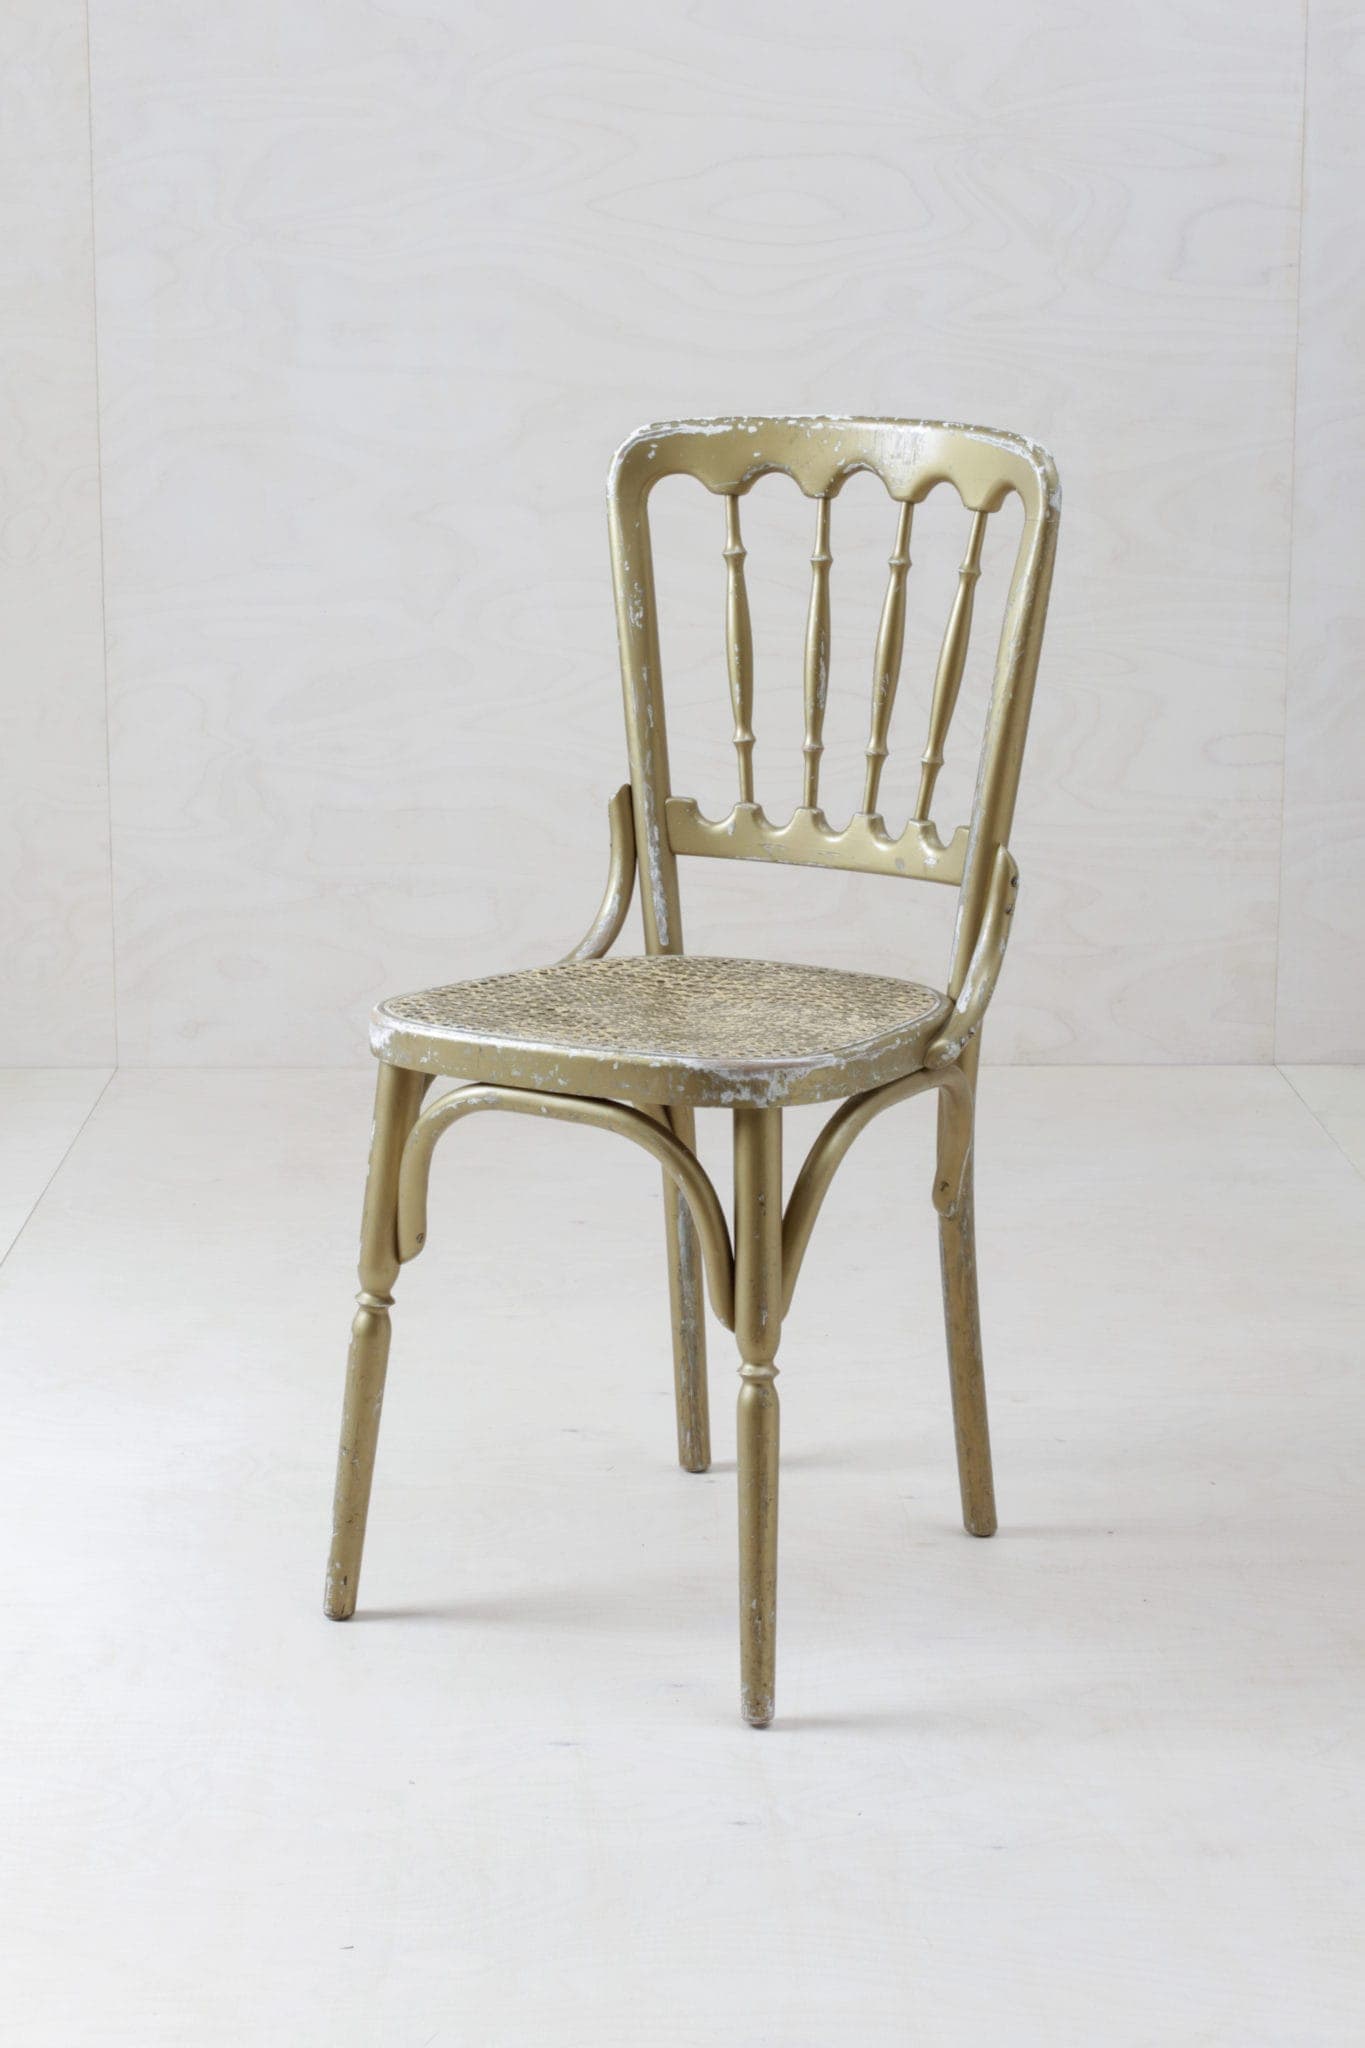 Original vintage Stühle im Chiavari zu mieten